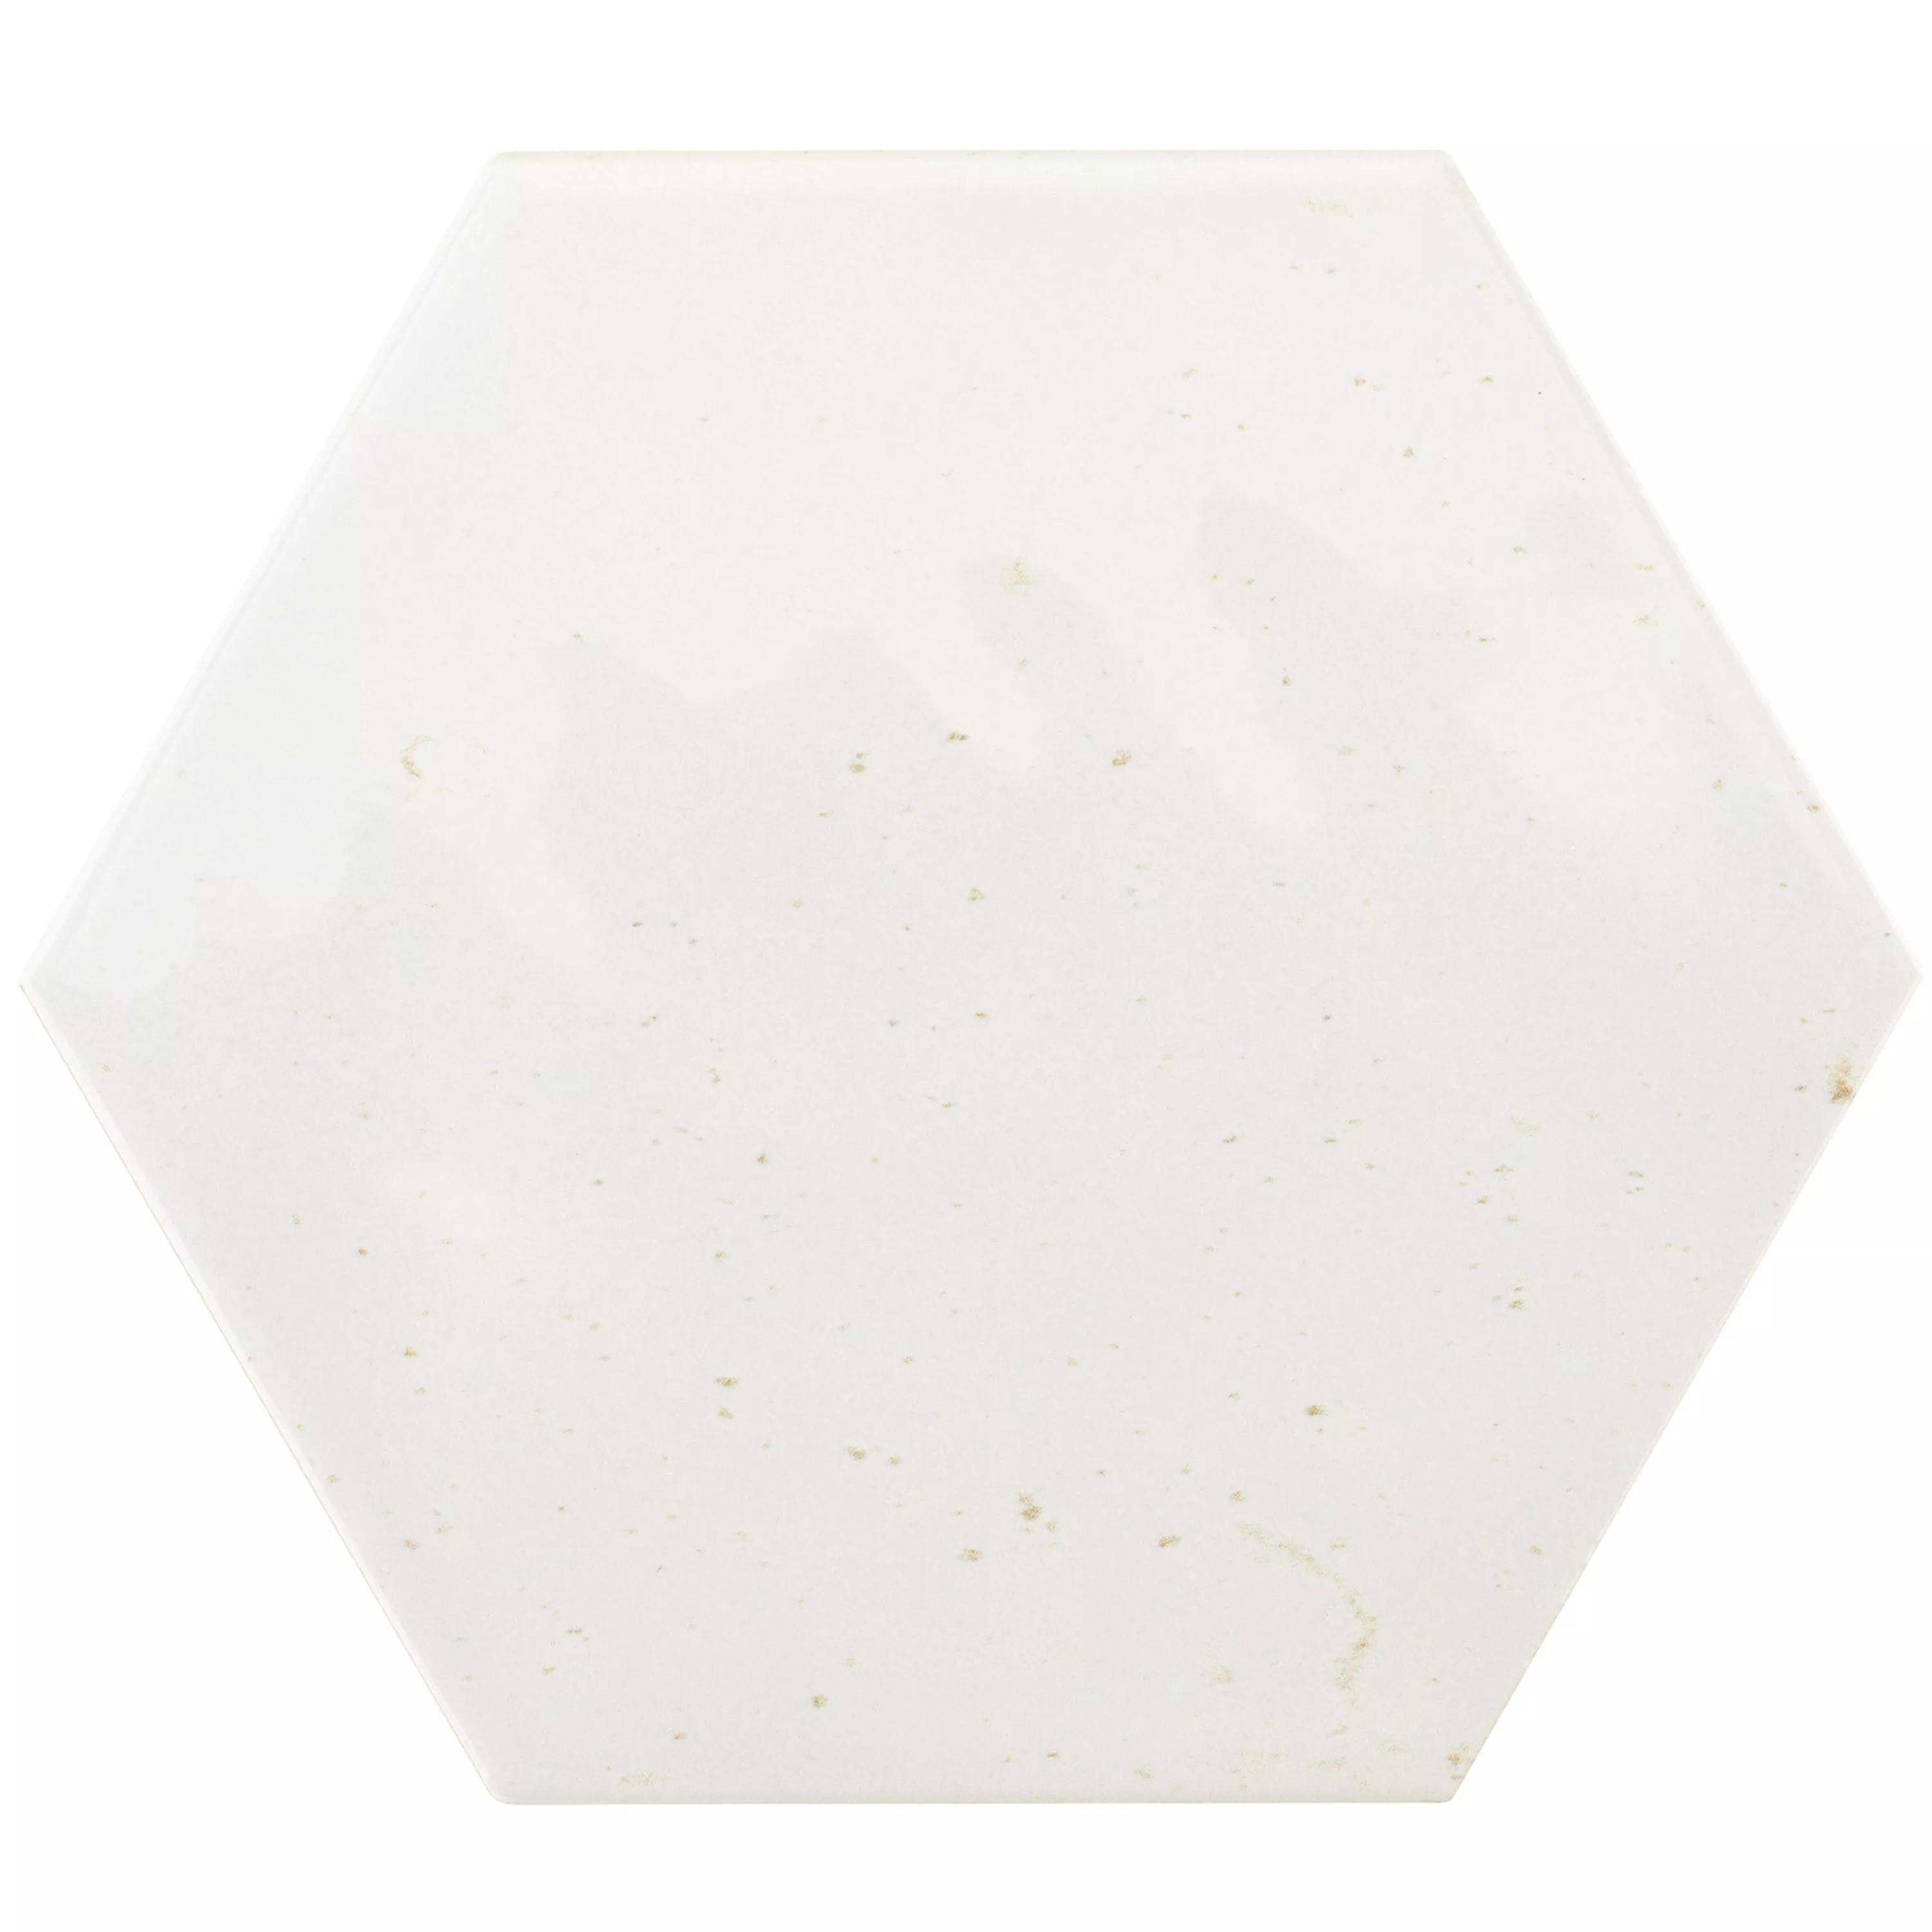 Muestra Revestimientos Arosa Brillante Corrugado Hexagonales Blanco 17,3x15cm